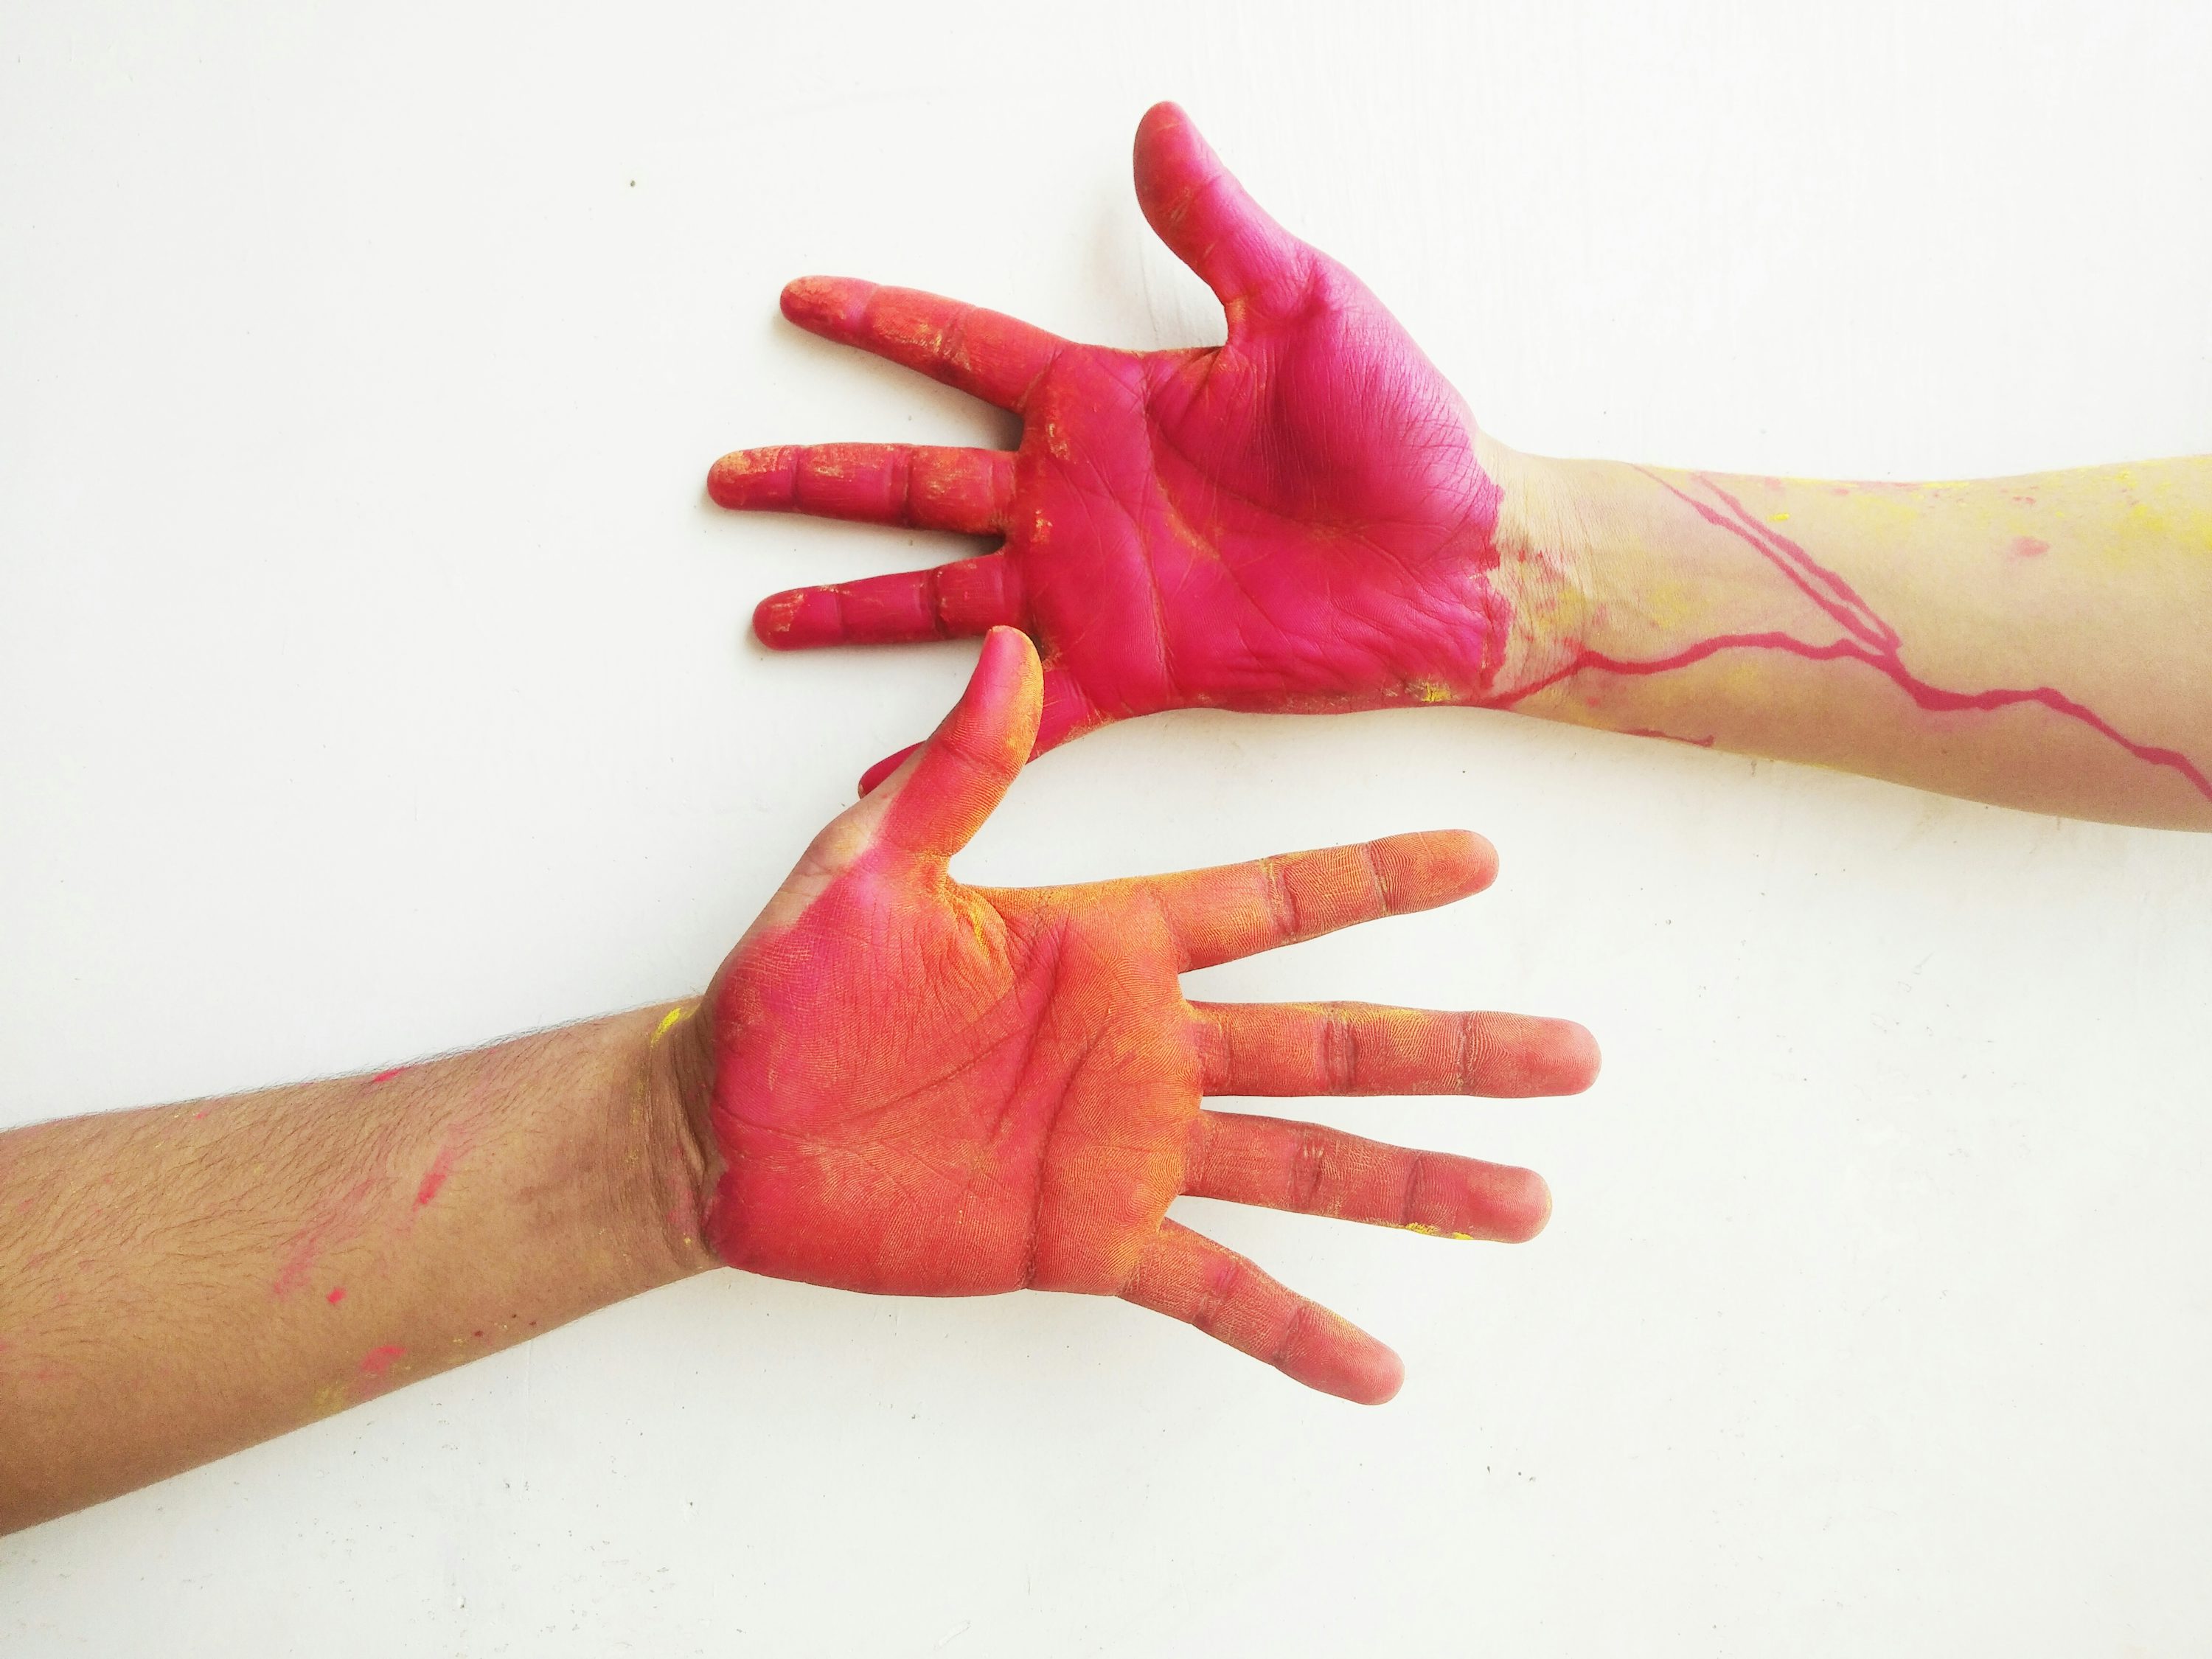 dos manos con pintura roja y amarilla en ellas